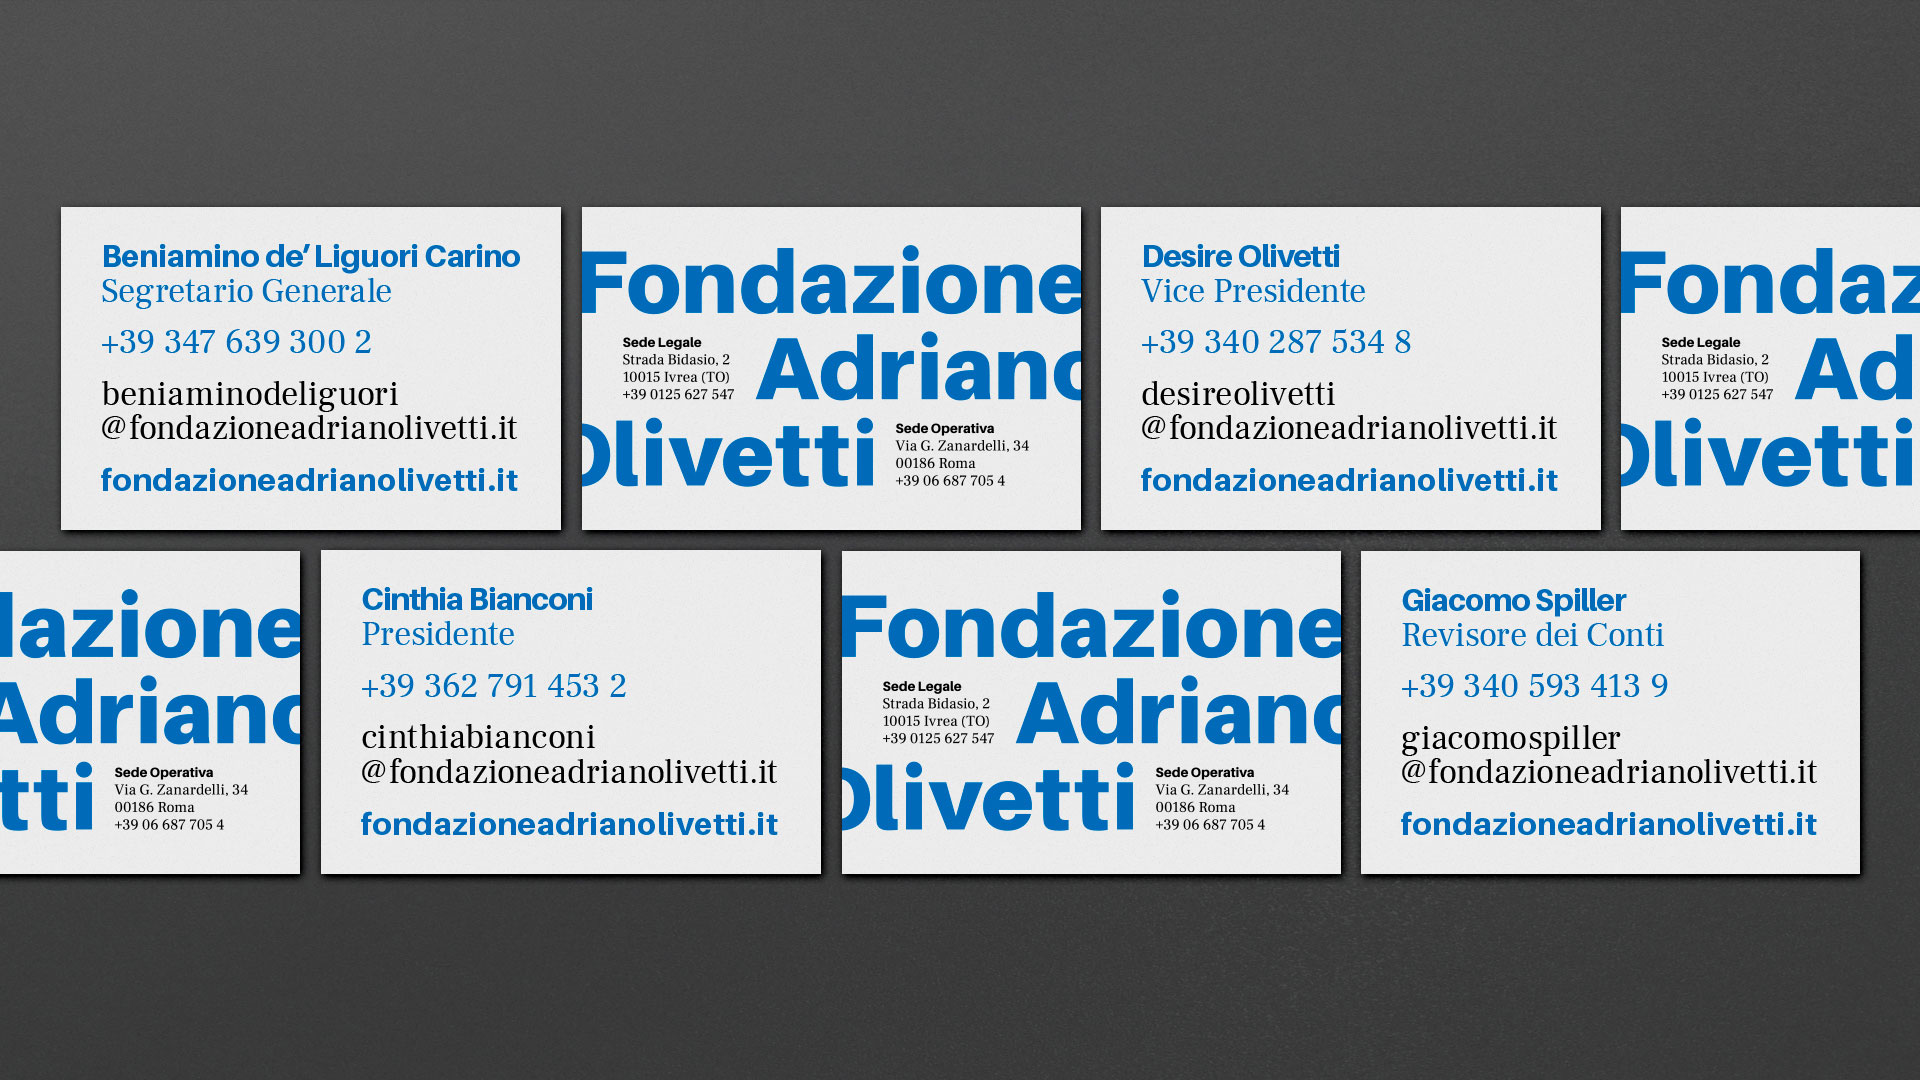 Fondazione Adriano Olivetti